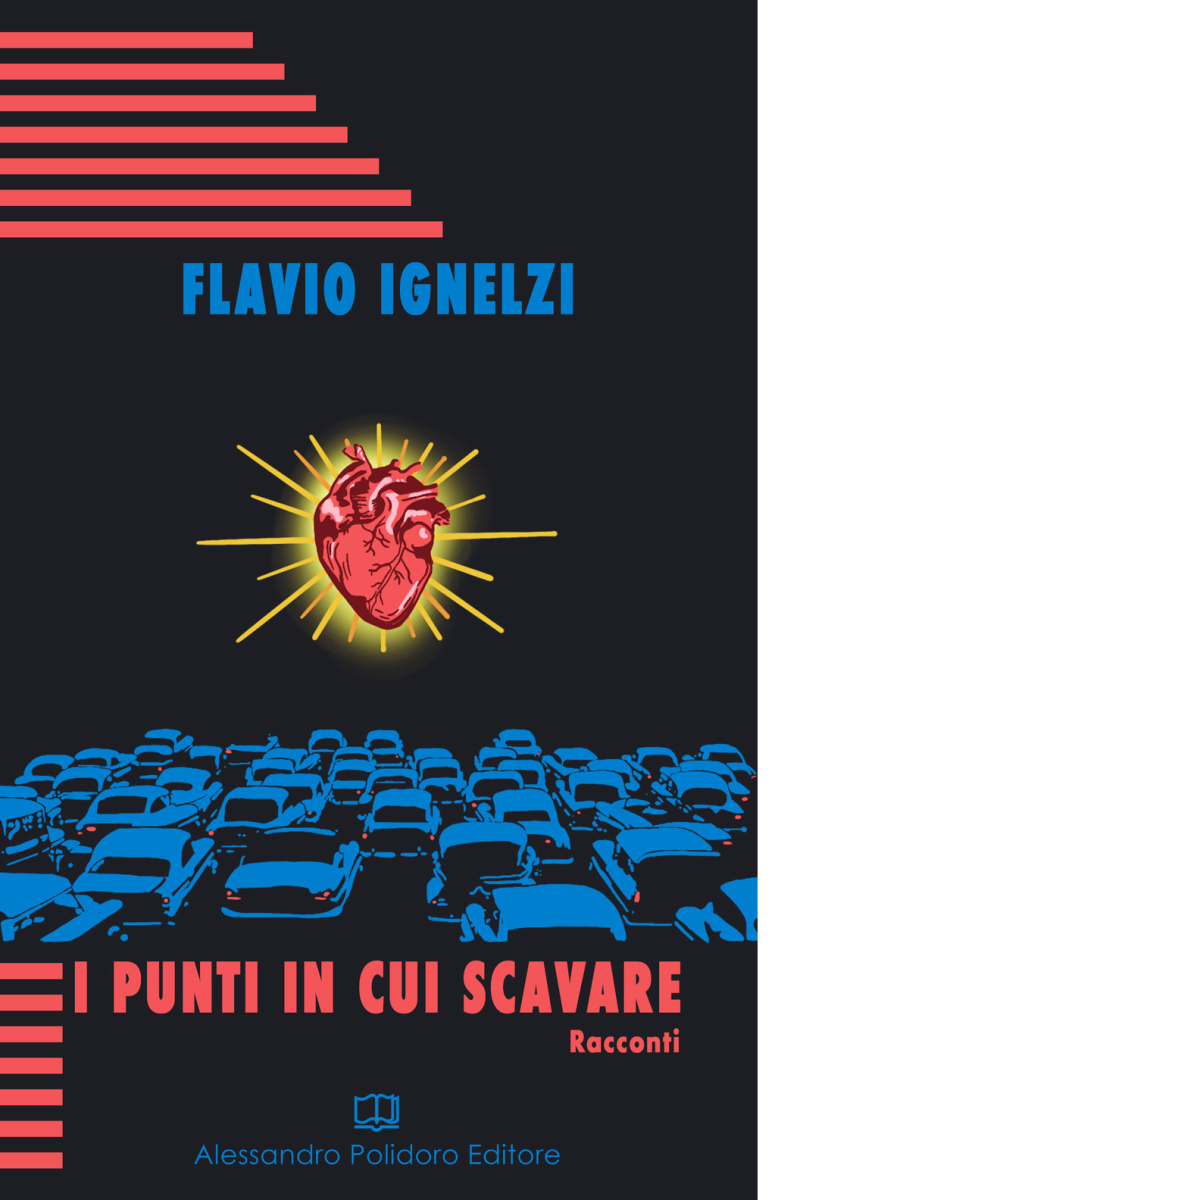 I punti in cui scavare di Flavio Ignelzi,  2019,  Alessandro Polidoro Editore